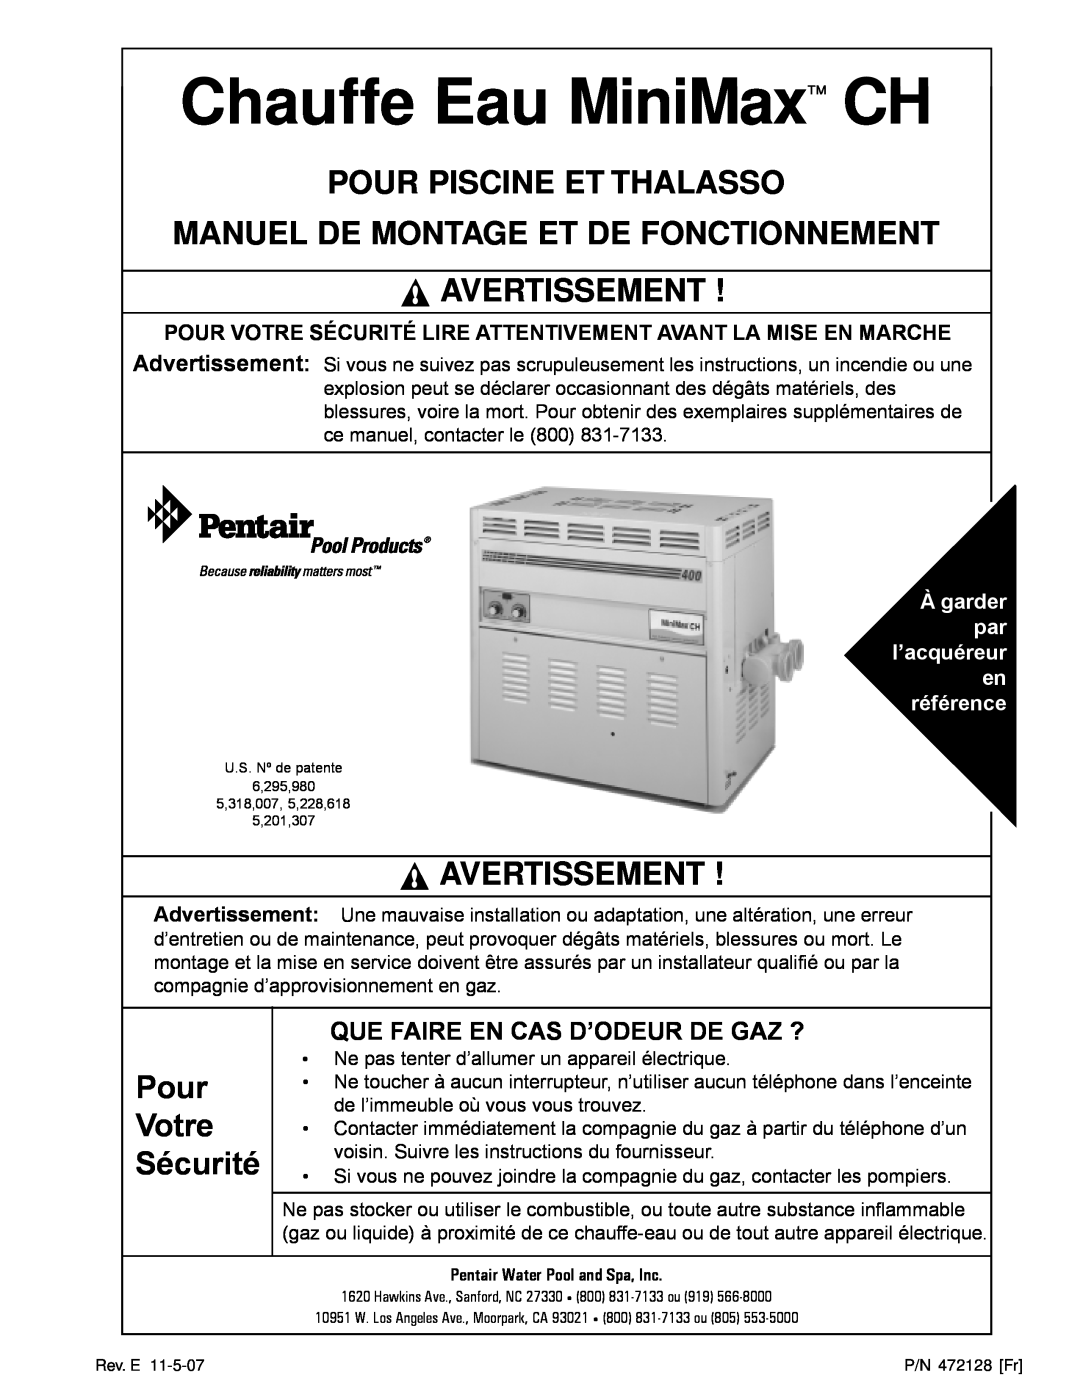 Pentair Hot Tub manual Pour Piscine Et Thalasso Manuel De Montage Et De Fonctionnement, Avertissement, Pour Votre Sécurité 